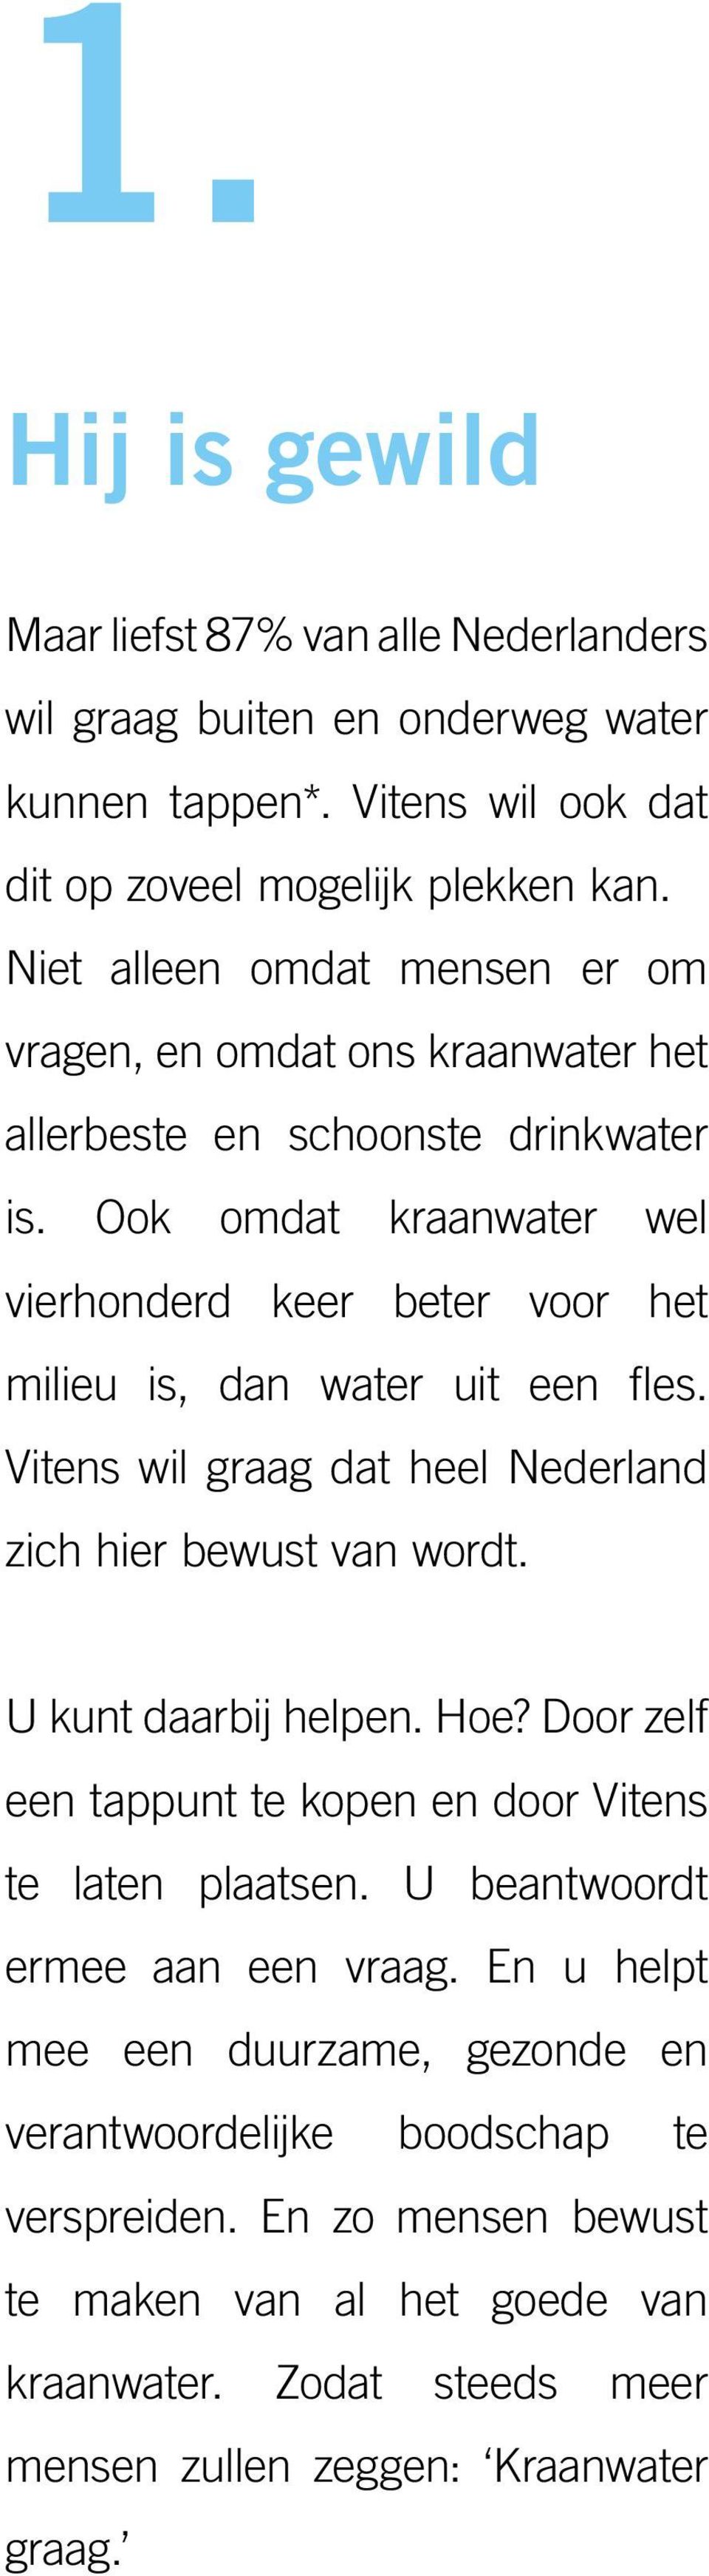 Ook omdat kraanwater wel vierhonderd keer beter voor het milieu is, dan water uit een fles. Vitens wil graag dat heel Nederland zich hier bewust van wordt. U kunt daarbij helpen. Hoe?